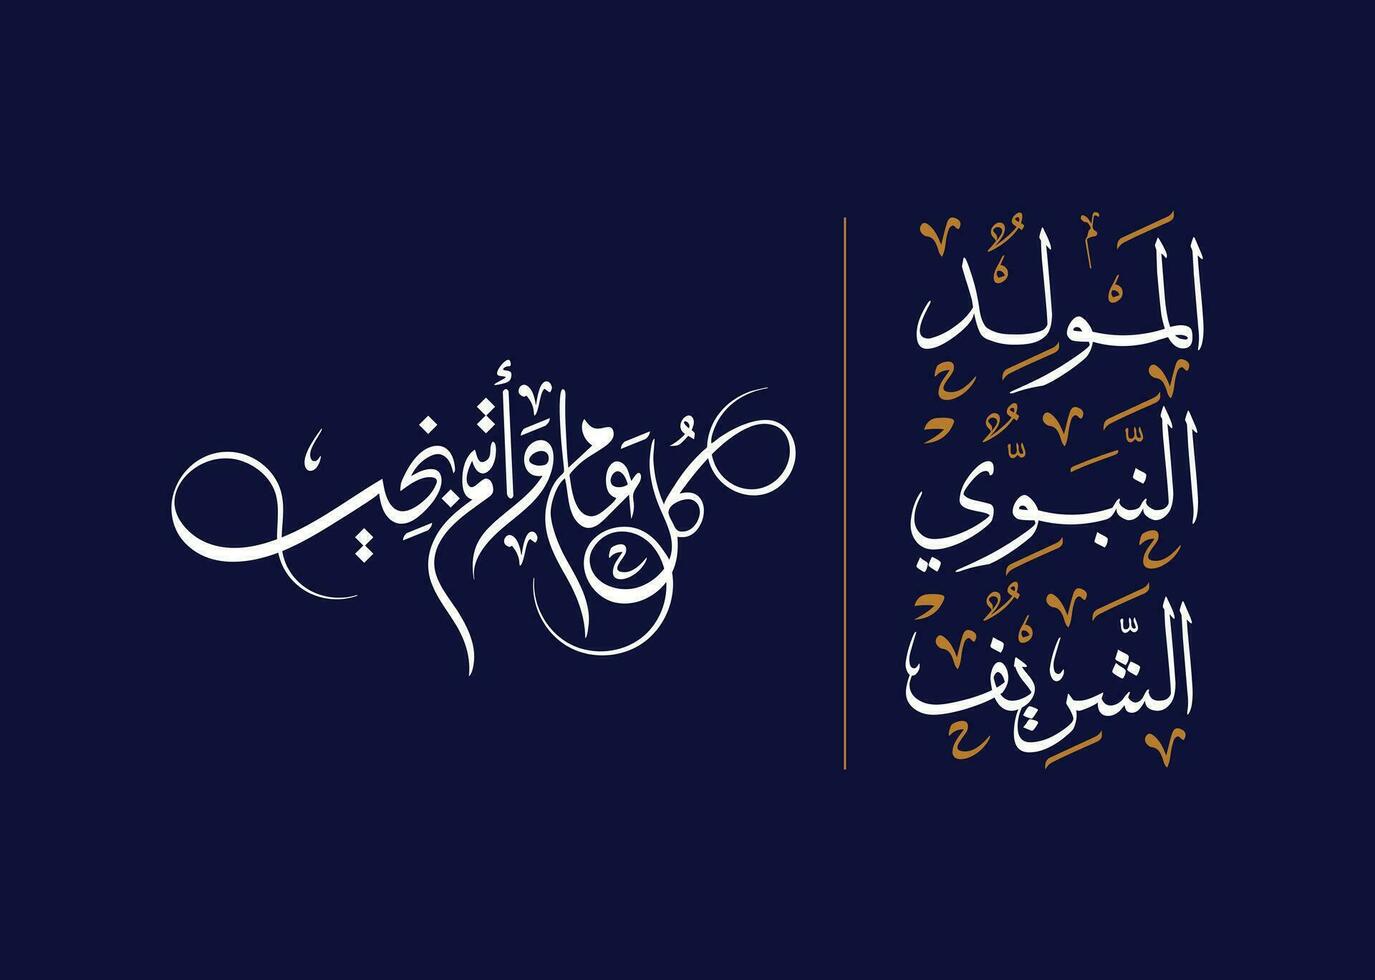 il santo profeta compleanno nel Arabo linguaggio Arabo thulth font calligrafia e desiderio voi contento nuovo anno nel Arabo linguaggio calligrafia font per profeta compleanno saluto carta islamico celebrazione vettore